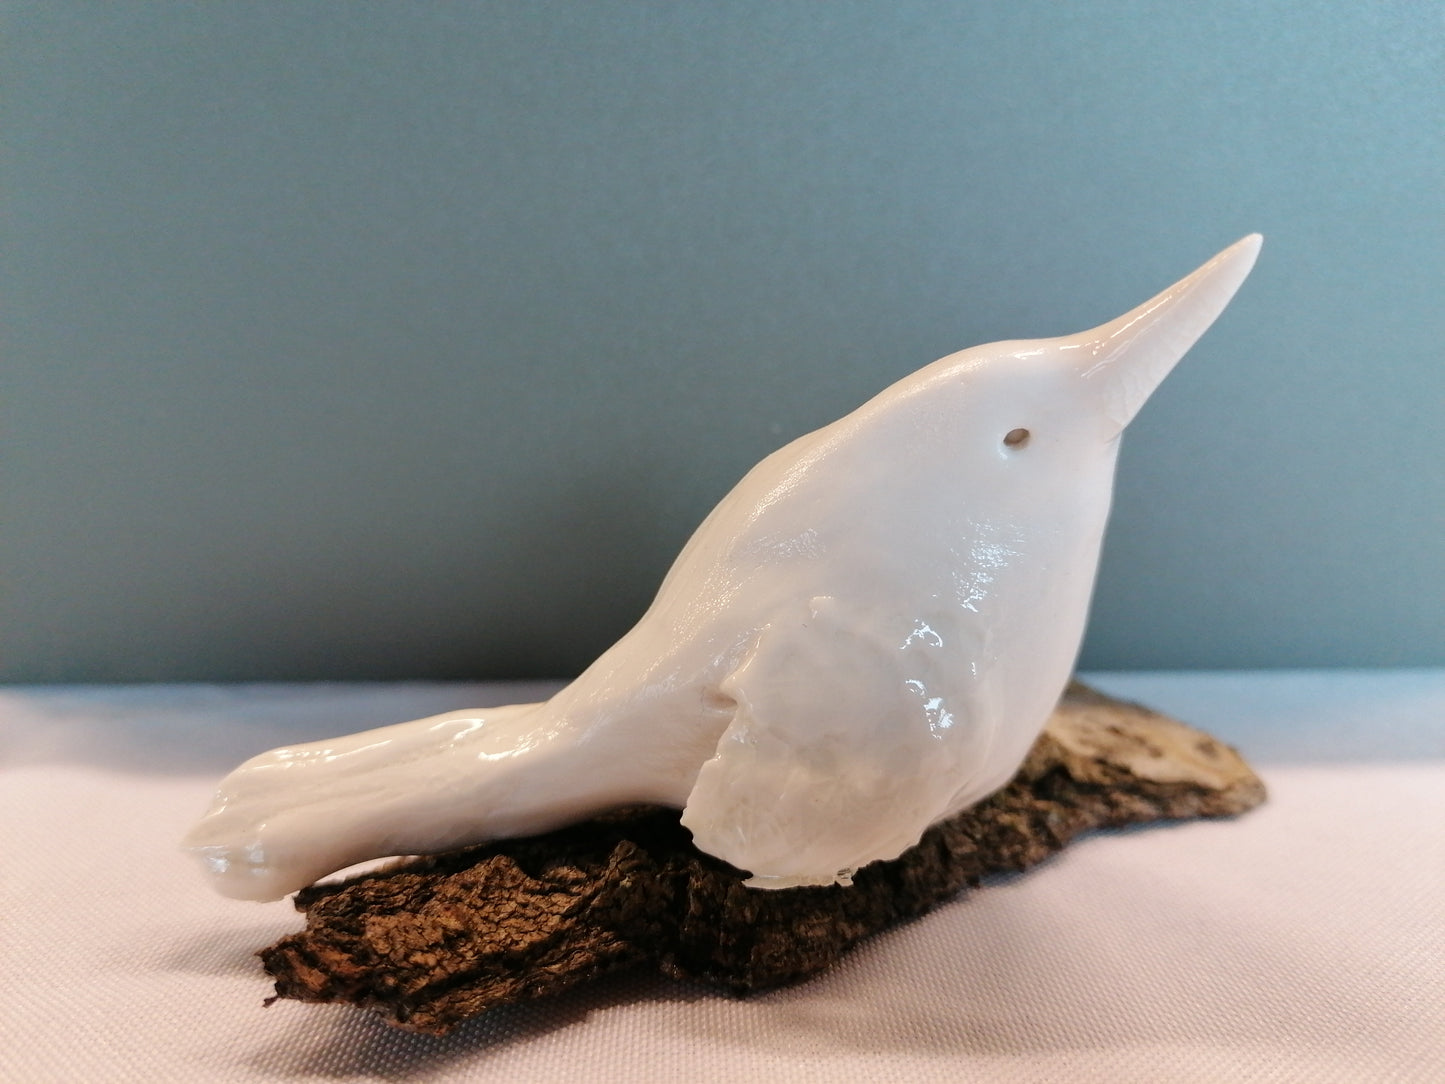 Oiseau de porcelaine n °10 by Sandrine De Zorzi